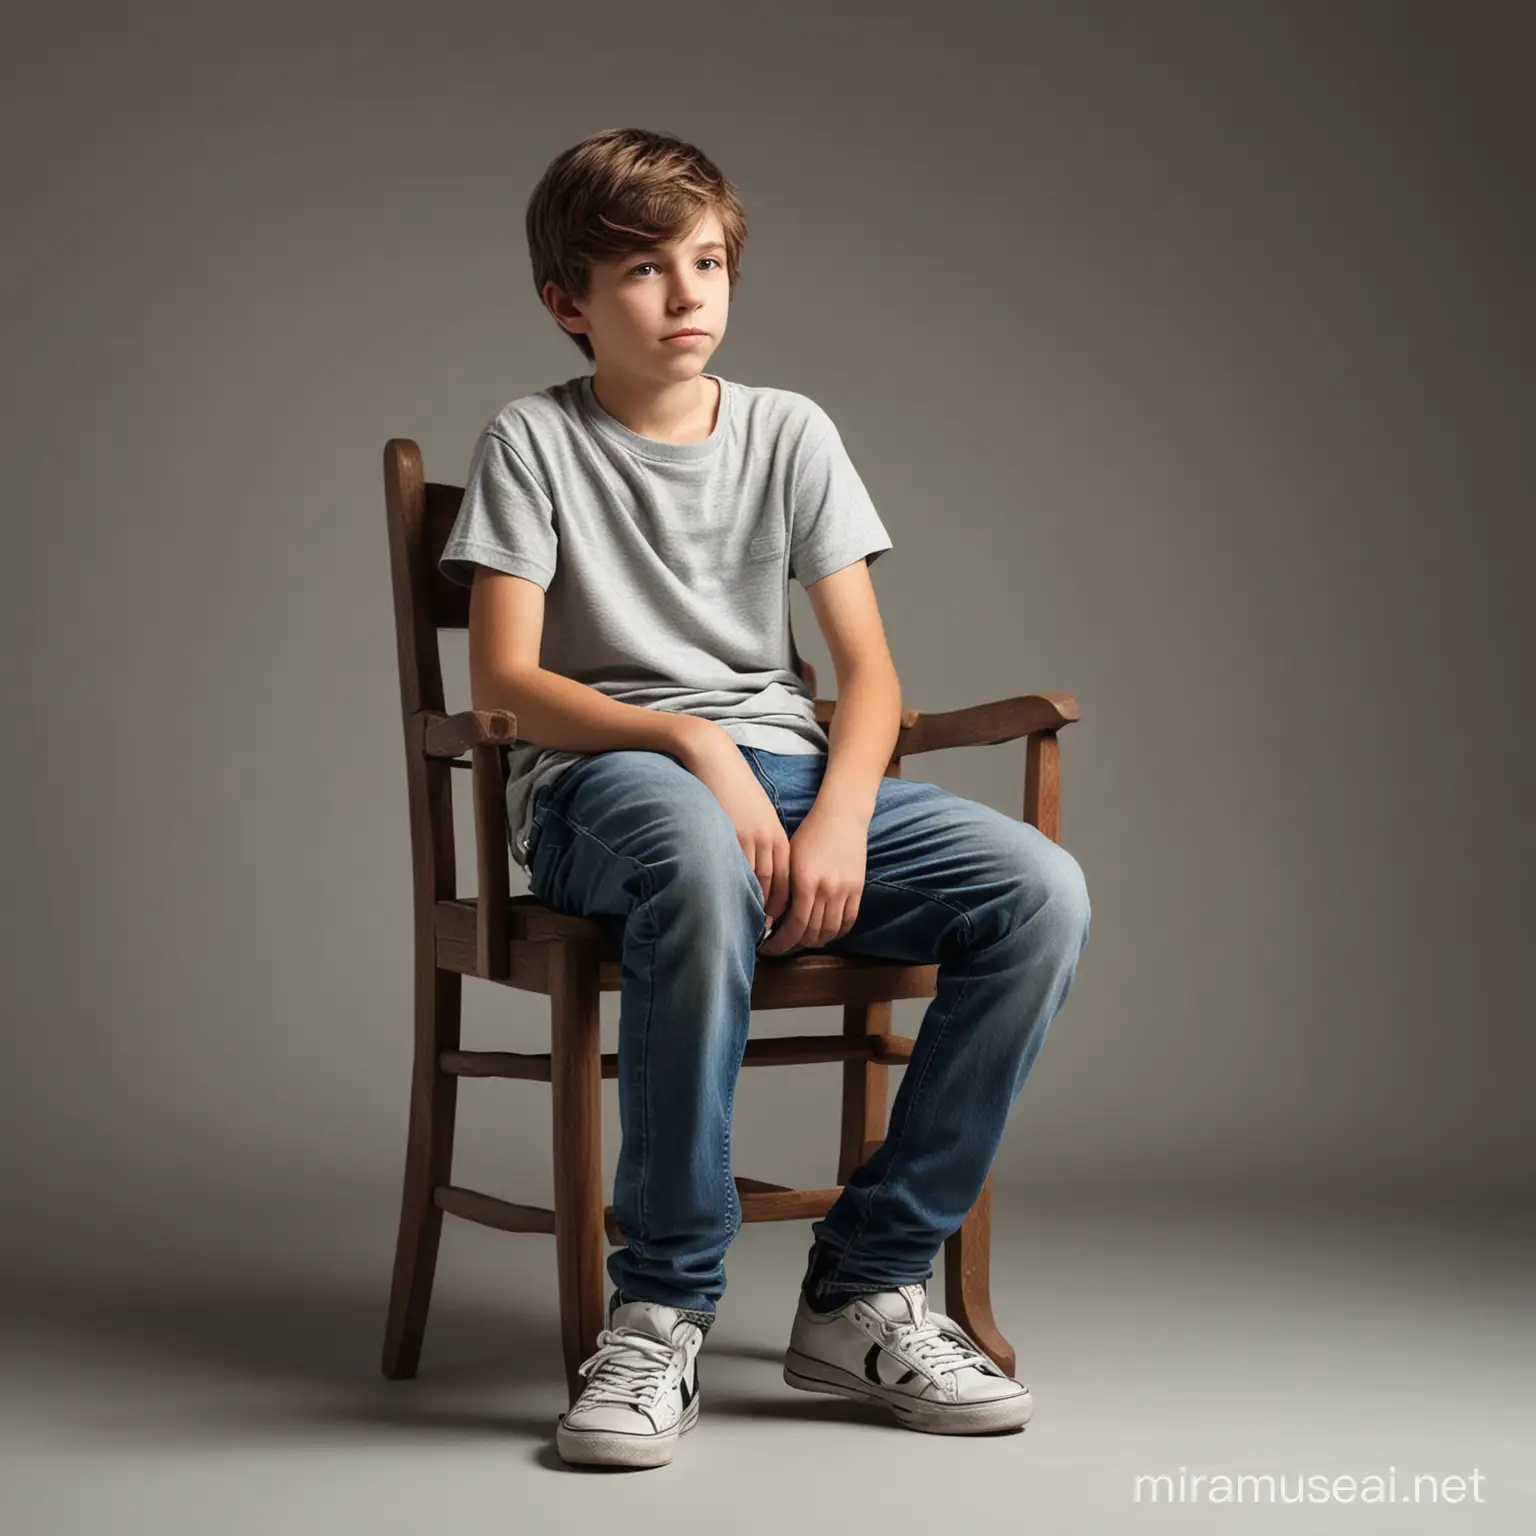 photo realistic fourteen year old boy sitting sideways on a chair
